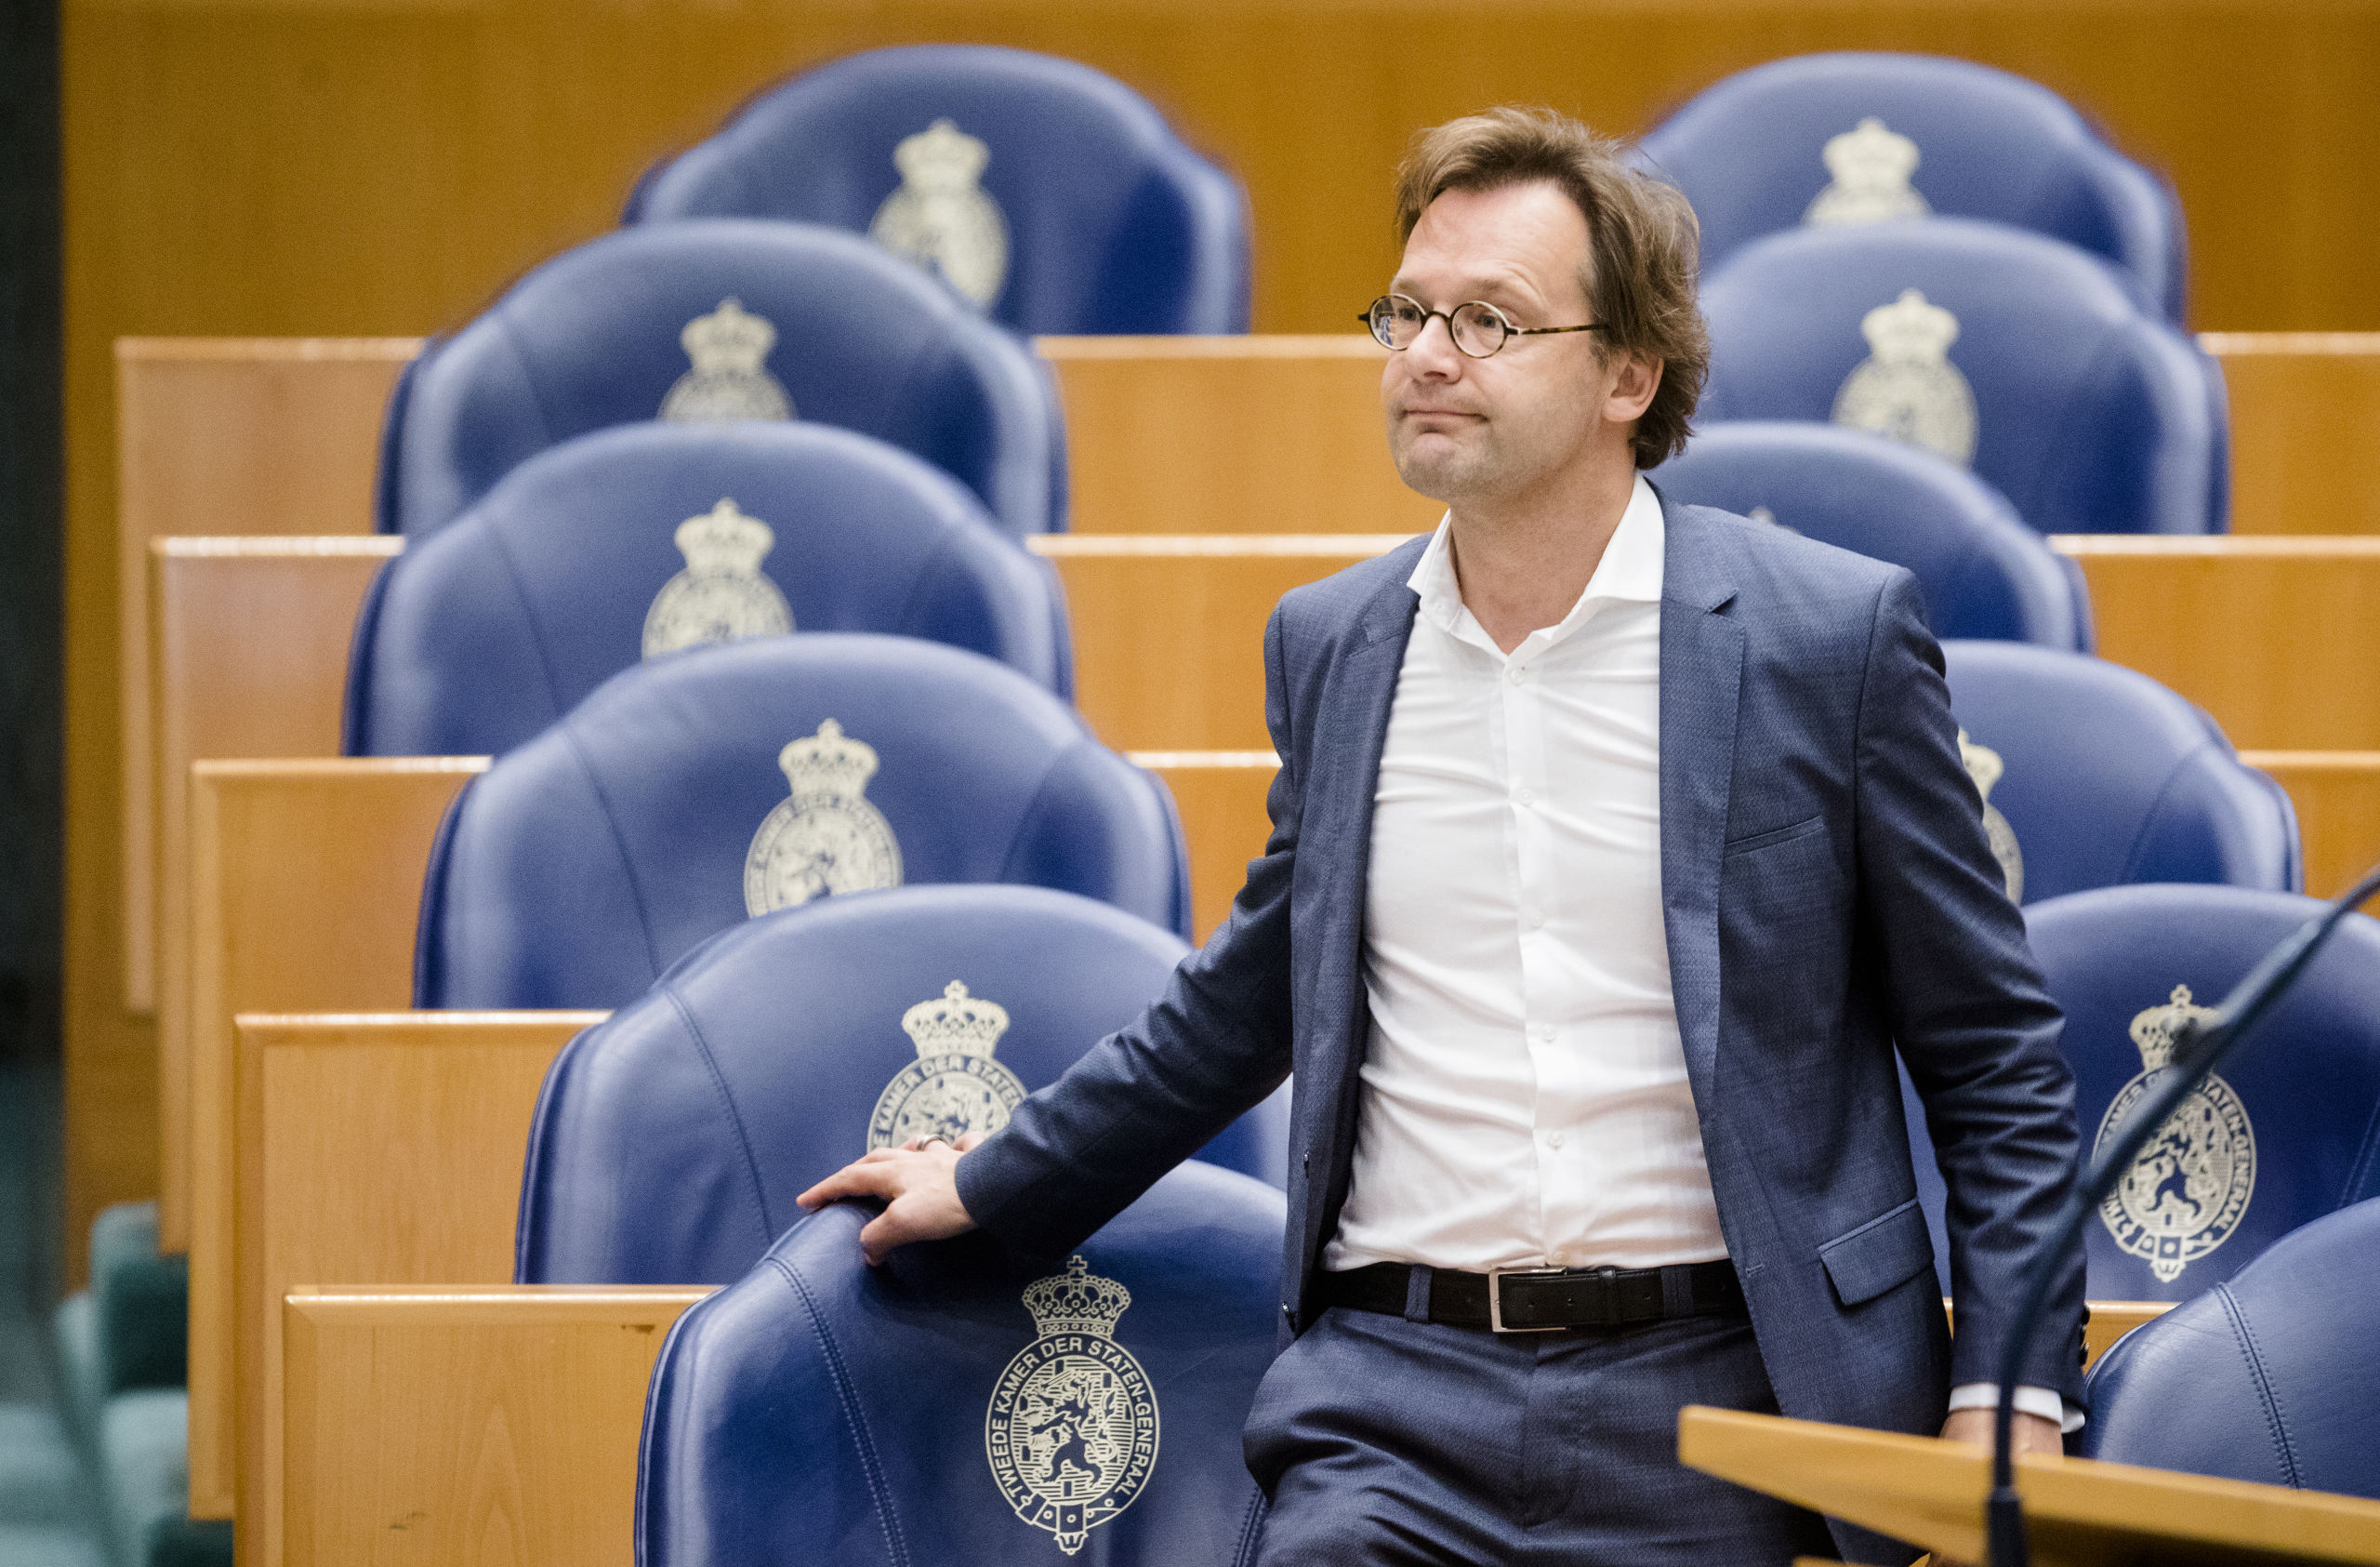 2018-10-10 11:14:50 DEN HAAG - Ronald van Raak (SP) tijdens de behandeling van de begroting van de koning en Algemene Zaken in de plenaire zaal van de Tweede Kamer. ANP BART MAAT